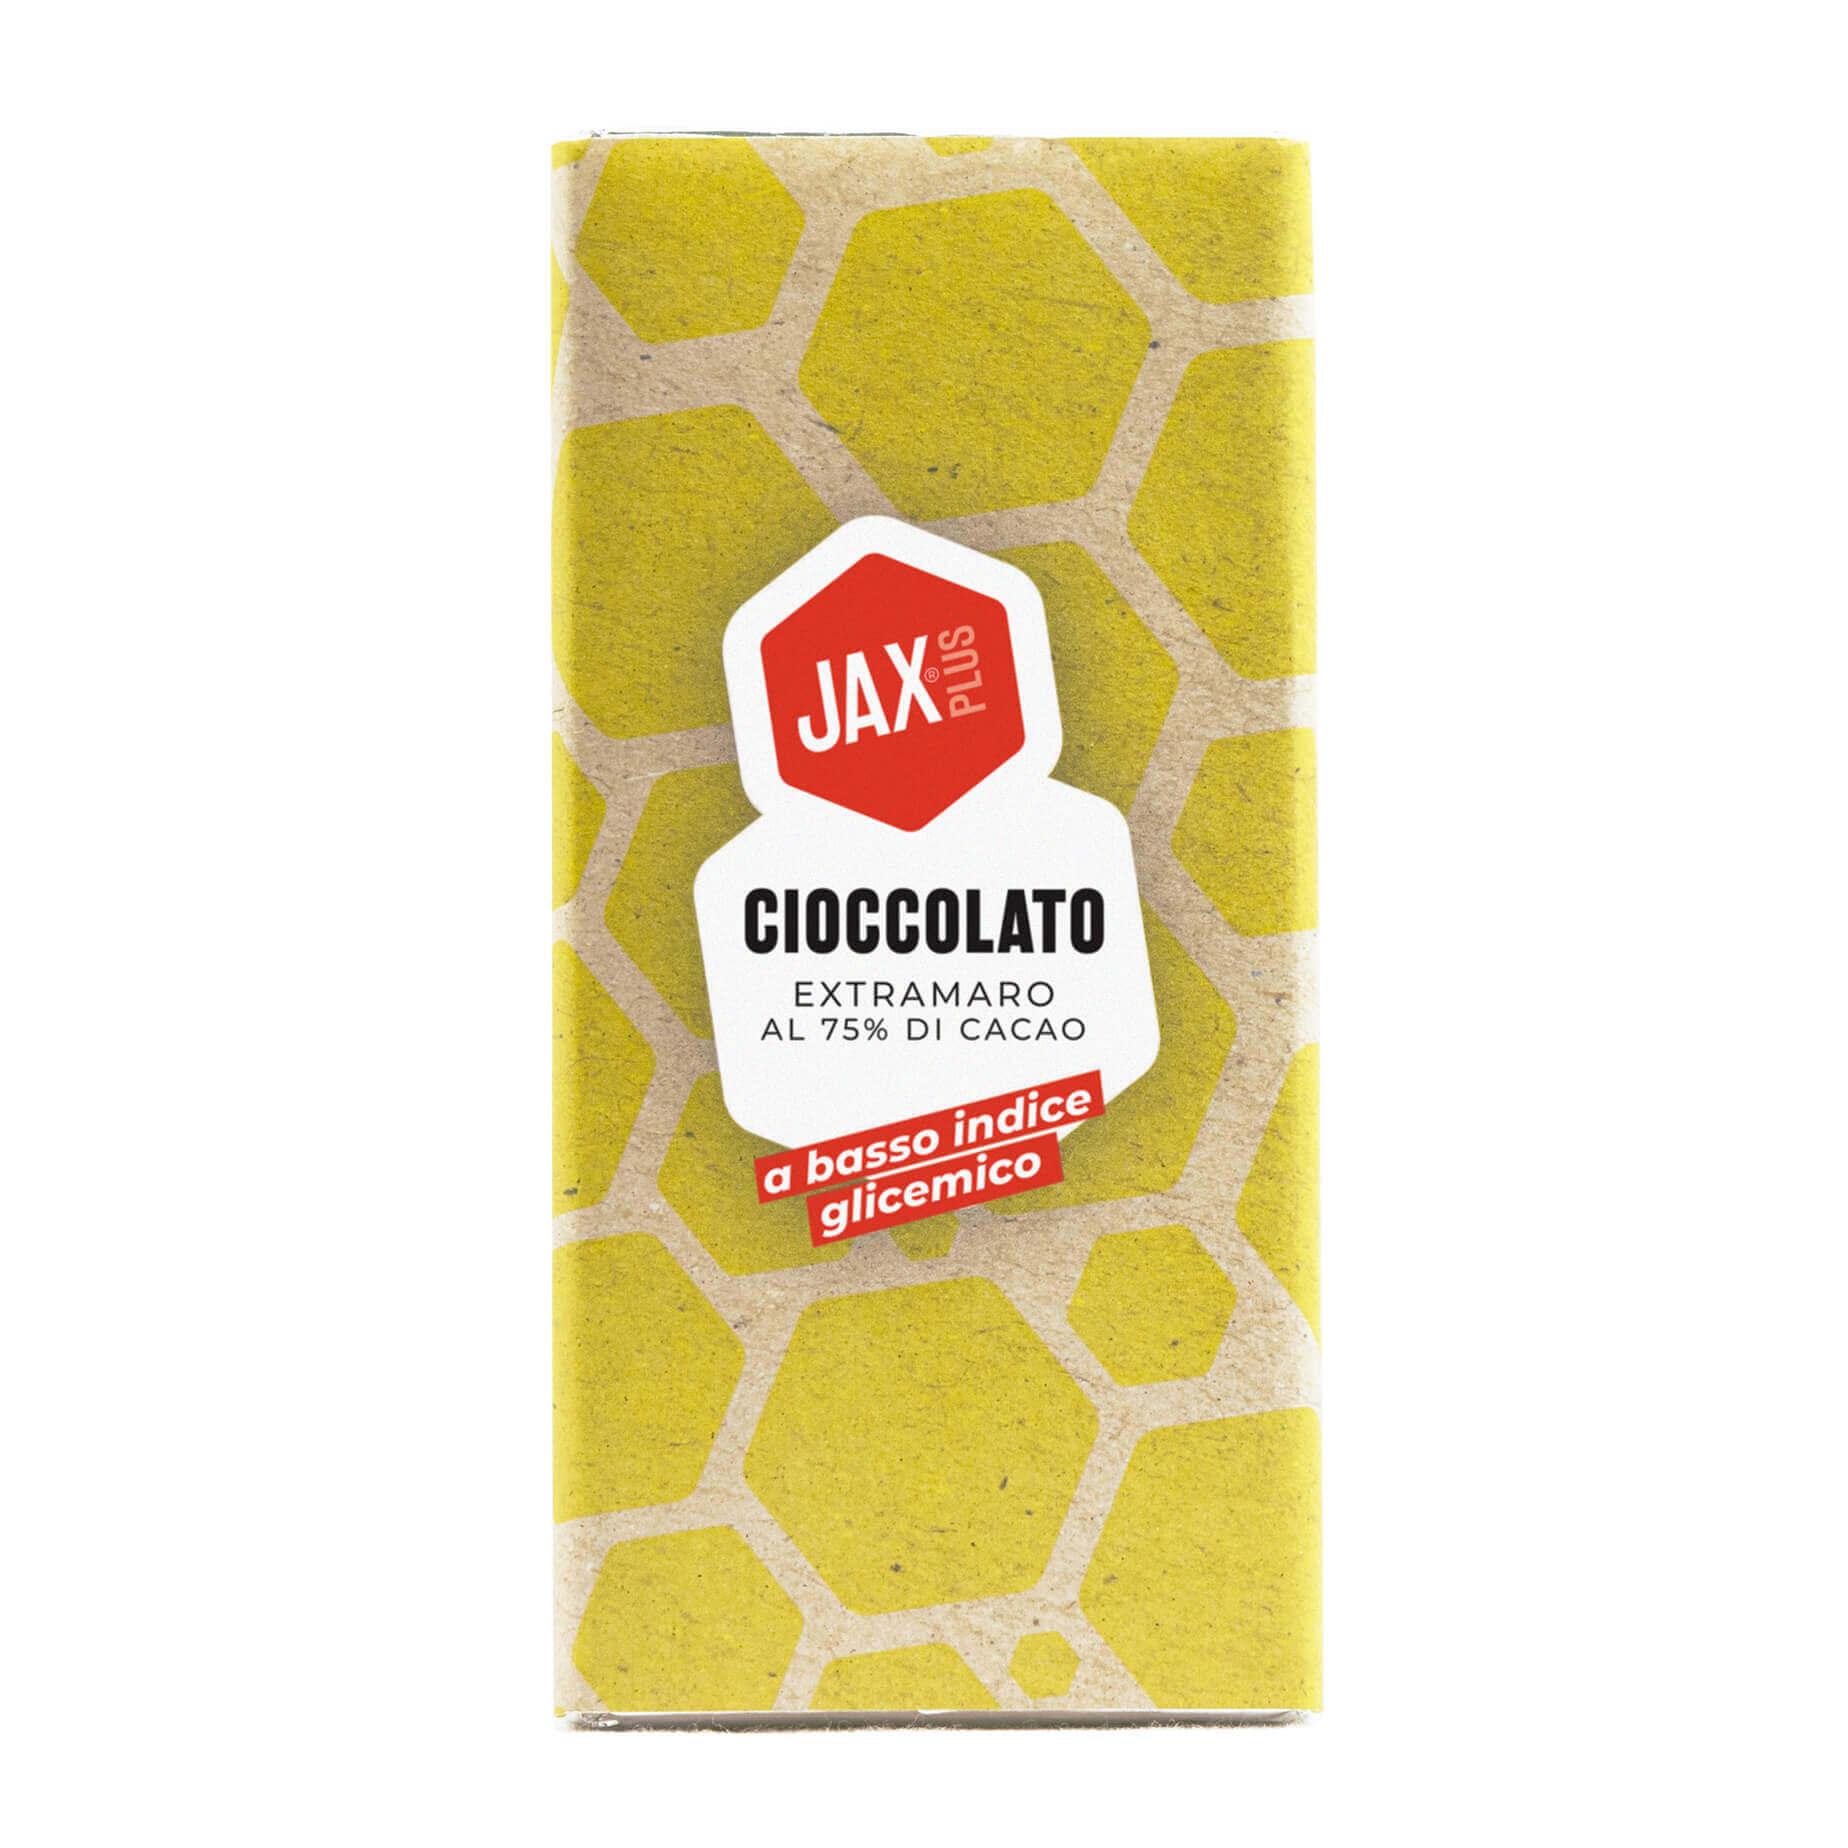 Cioccolato JAXplus extramaro al 75% di cacao